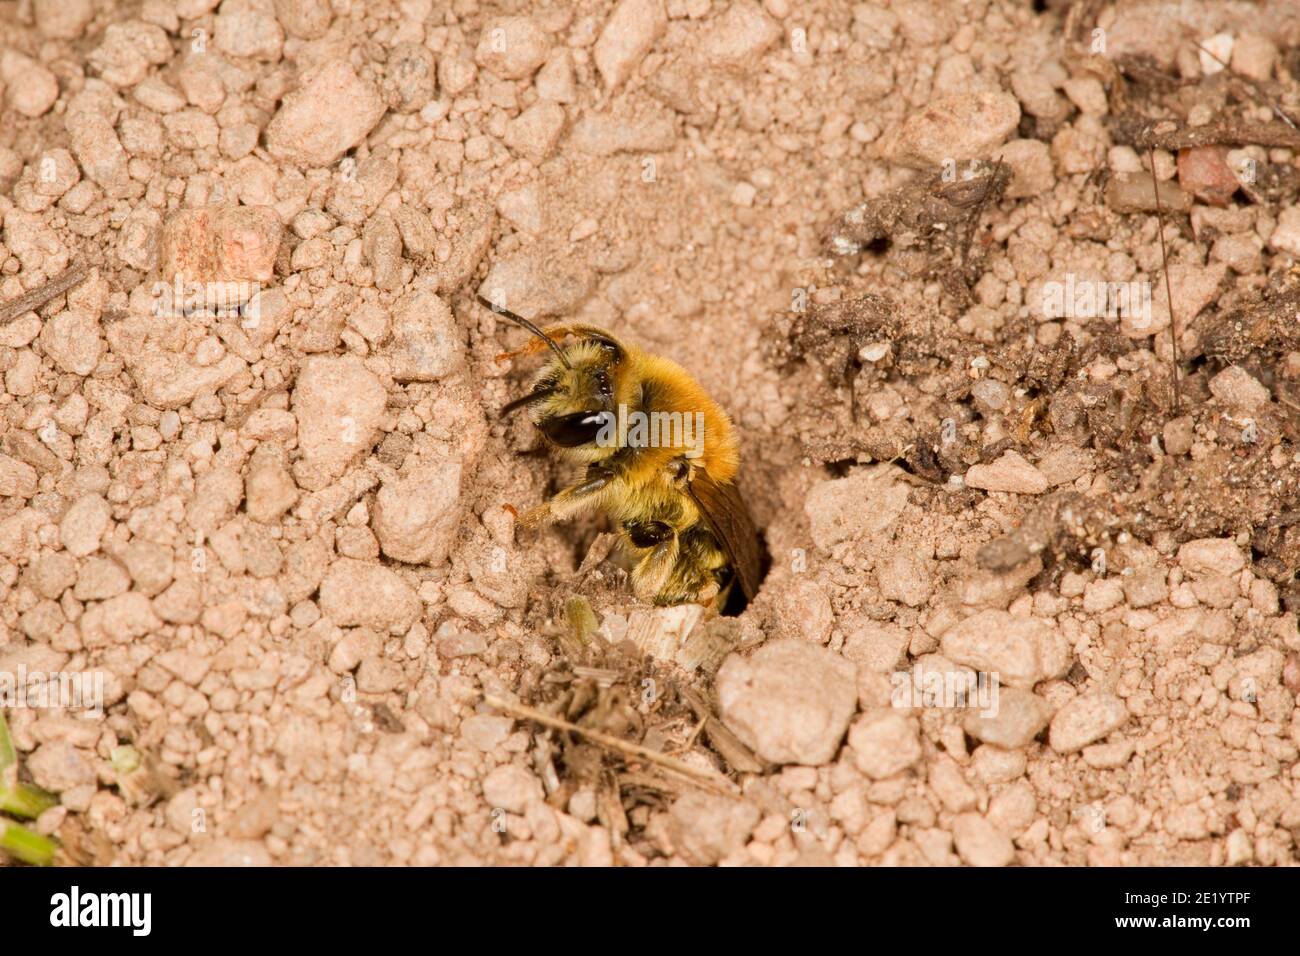 Andrena nest immagini e fotografie stock ad alta risoluzione - Alamy